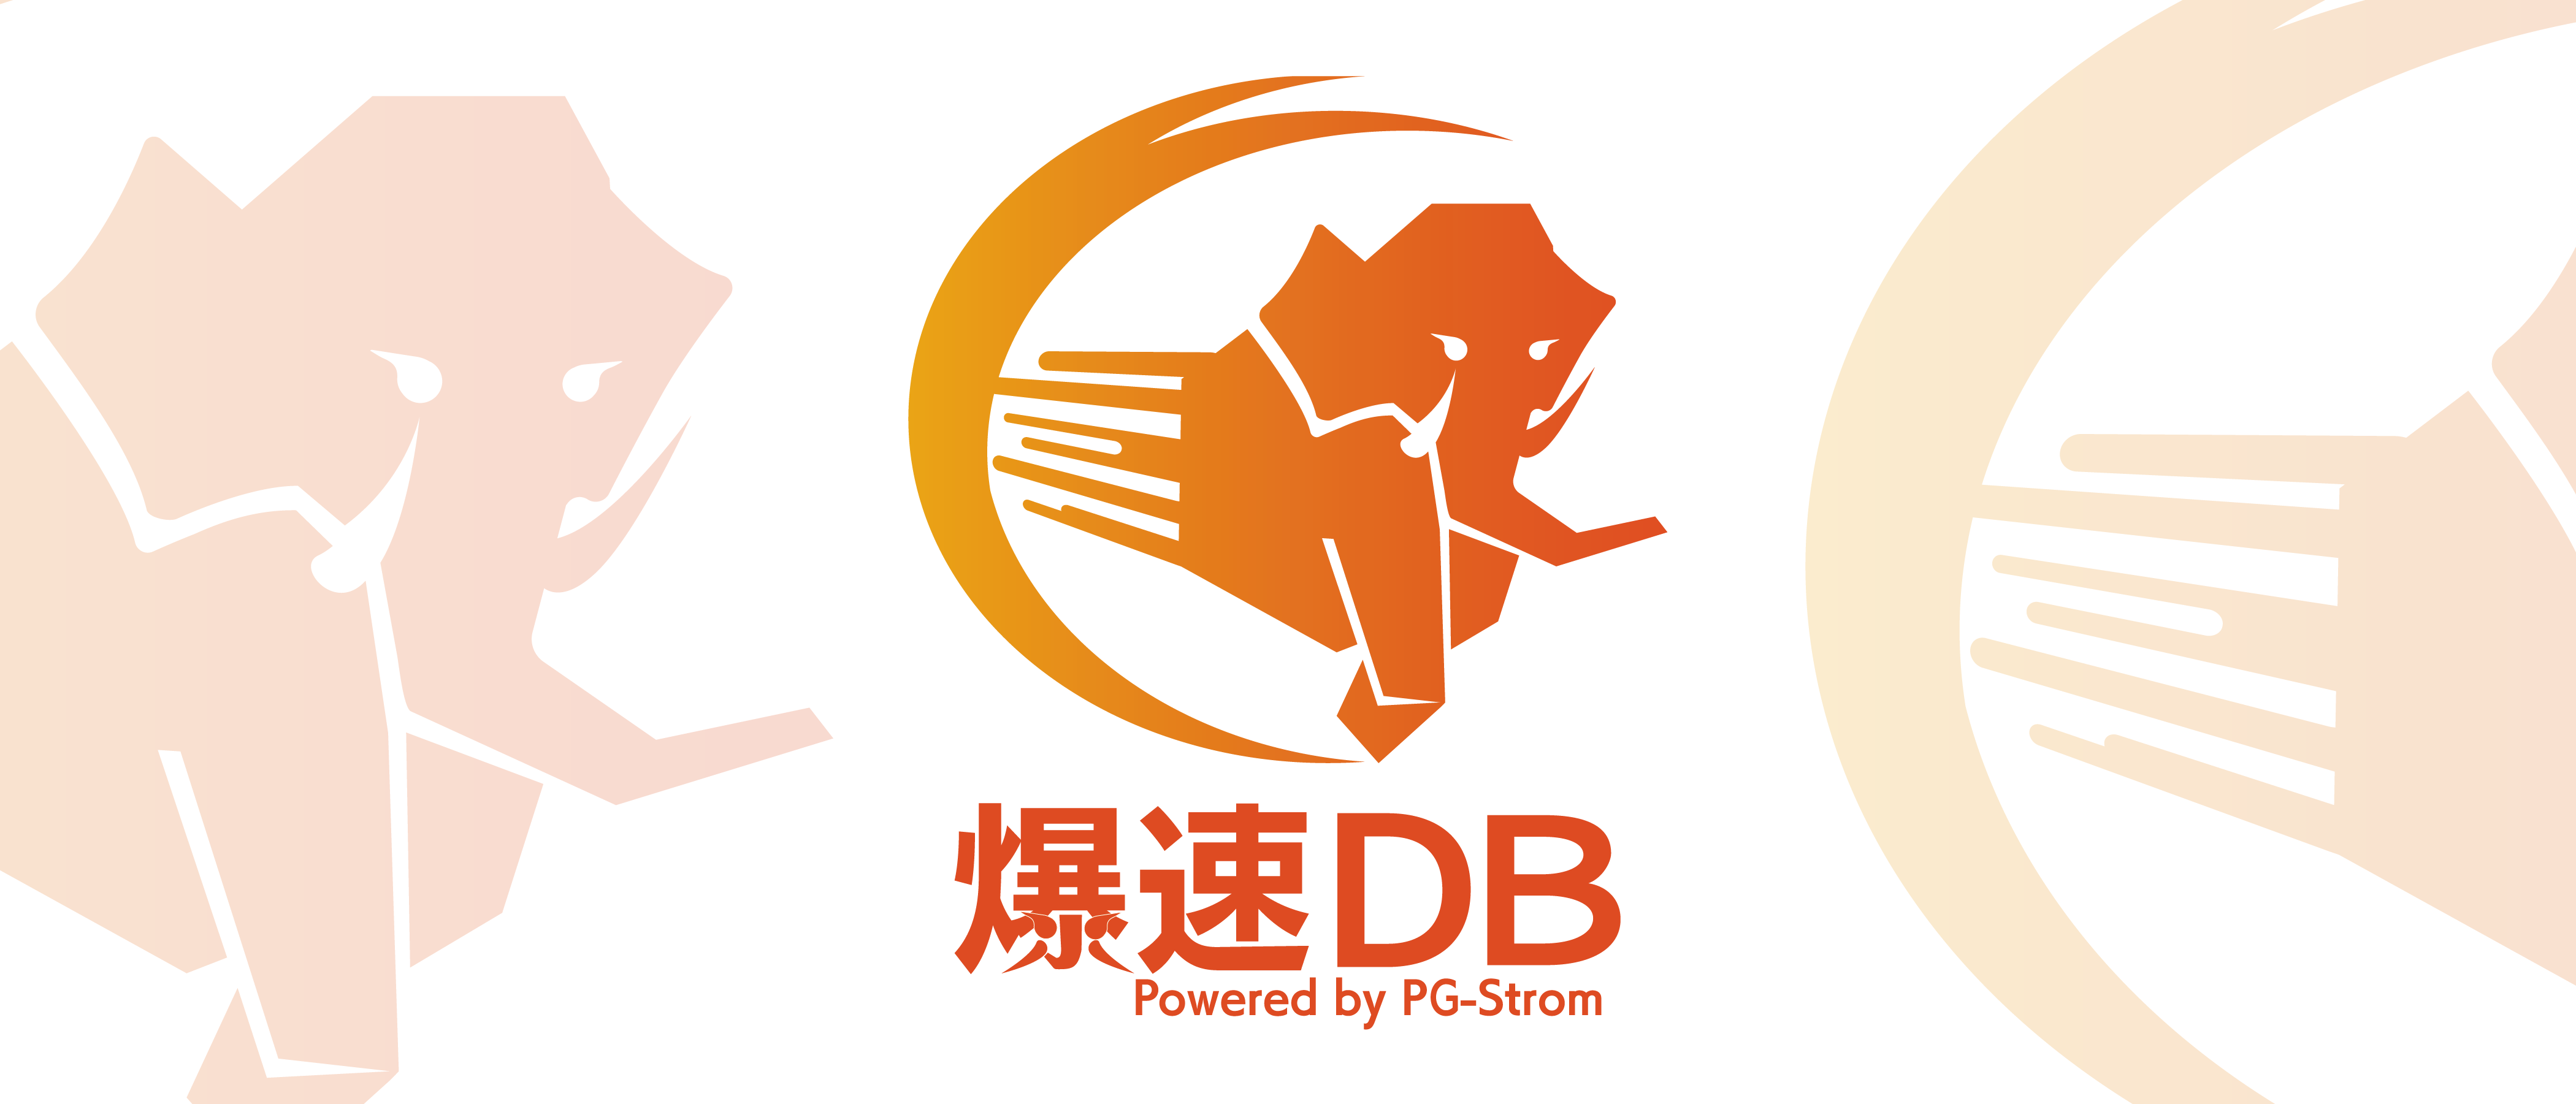 爆速DB ロゴデザイン